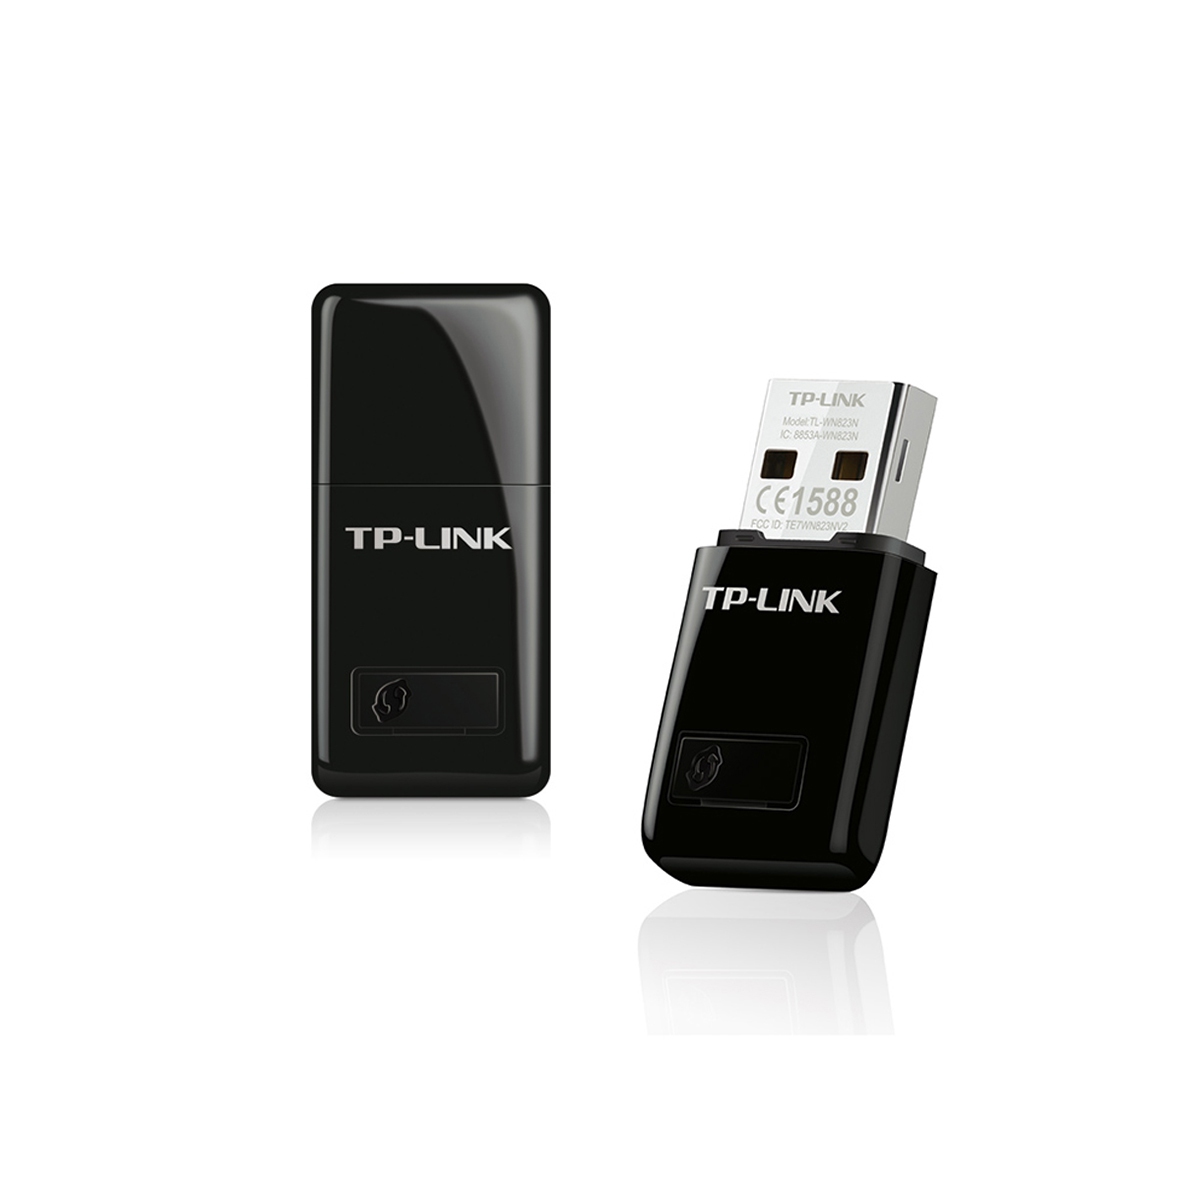 Harga Jual TP-LINK TL-WN823N 300Mbps Mini Wireless N USB Adapter